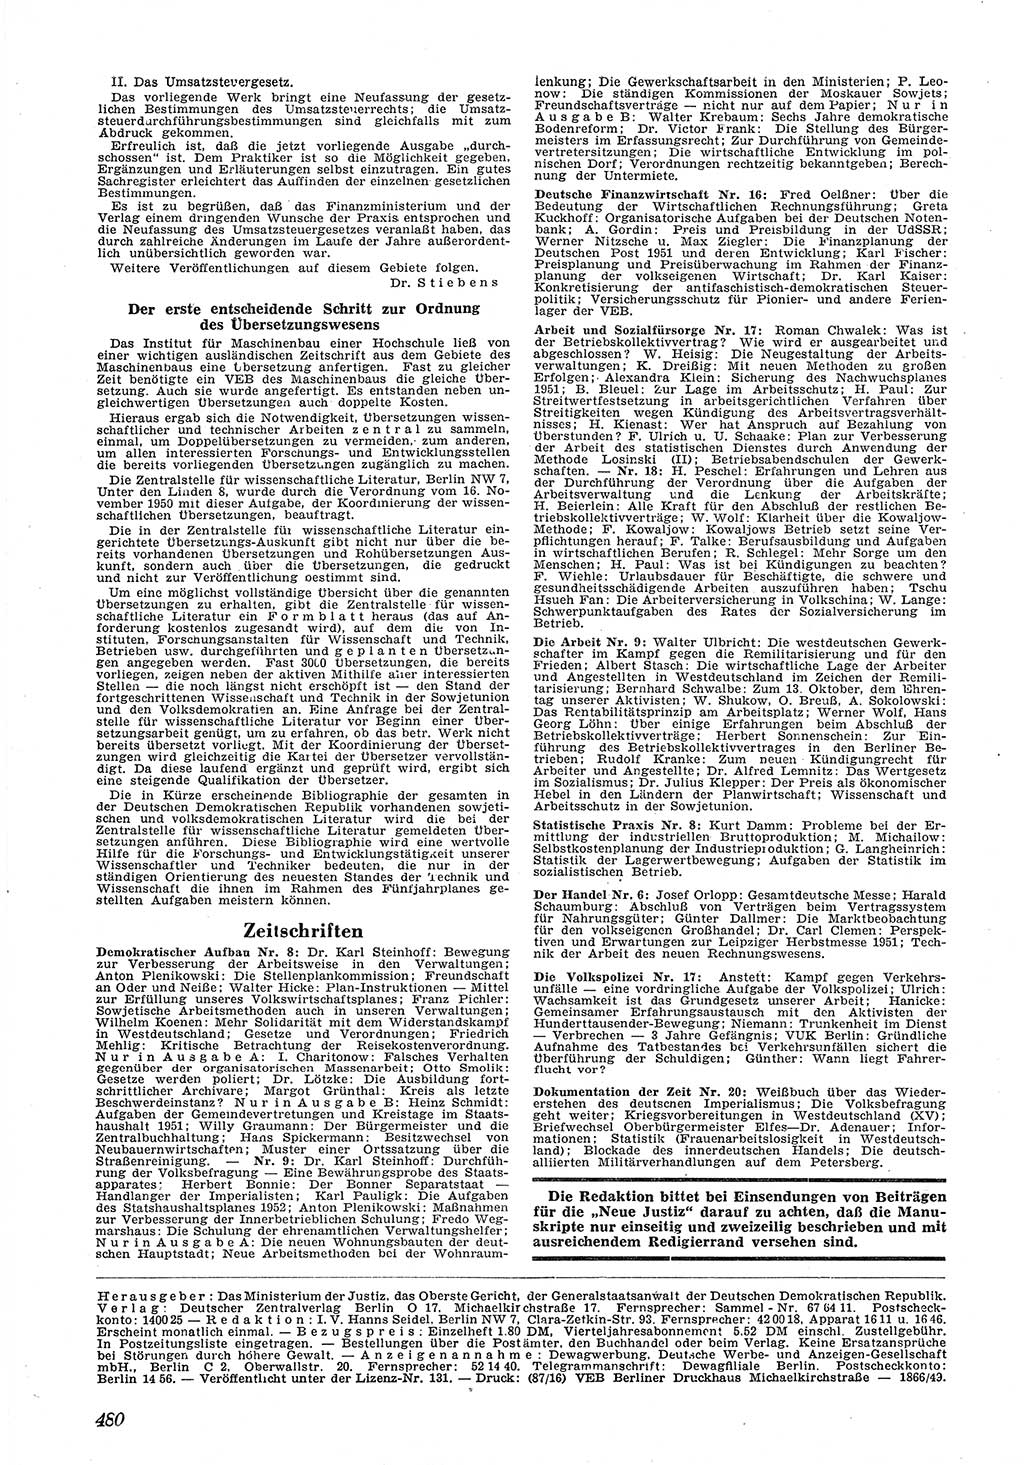 Neue Justiz (NJ), Zeitschrift für Recht und Rechtswissenschaft [Deutsche Demokratische Republik (DDR)], 5. Jahrgang 1951, Seite 480 (NJ DDR 1951, S. 480)